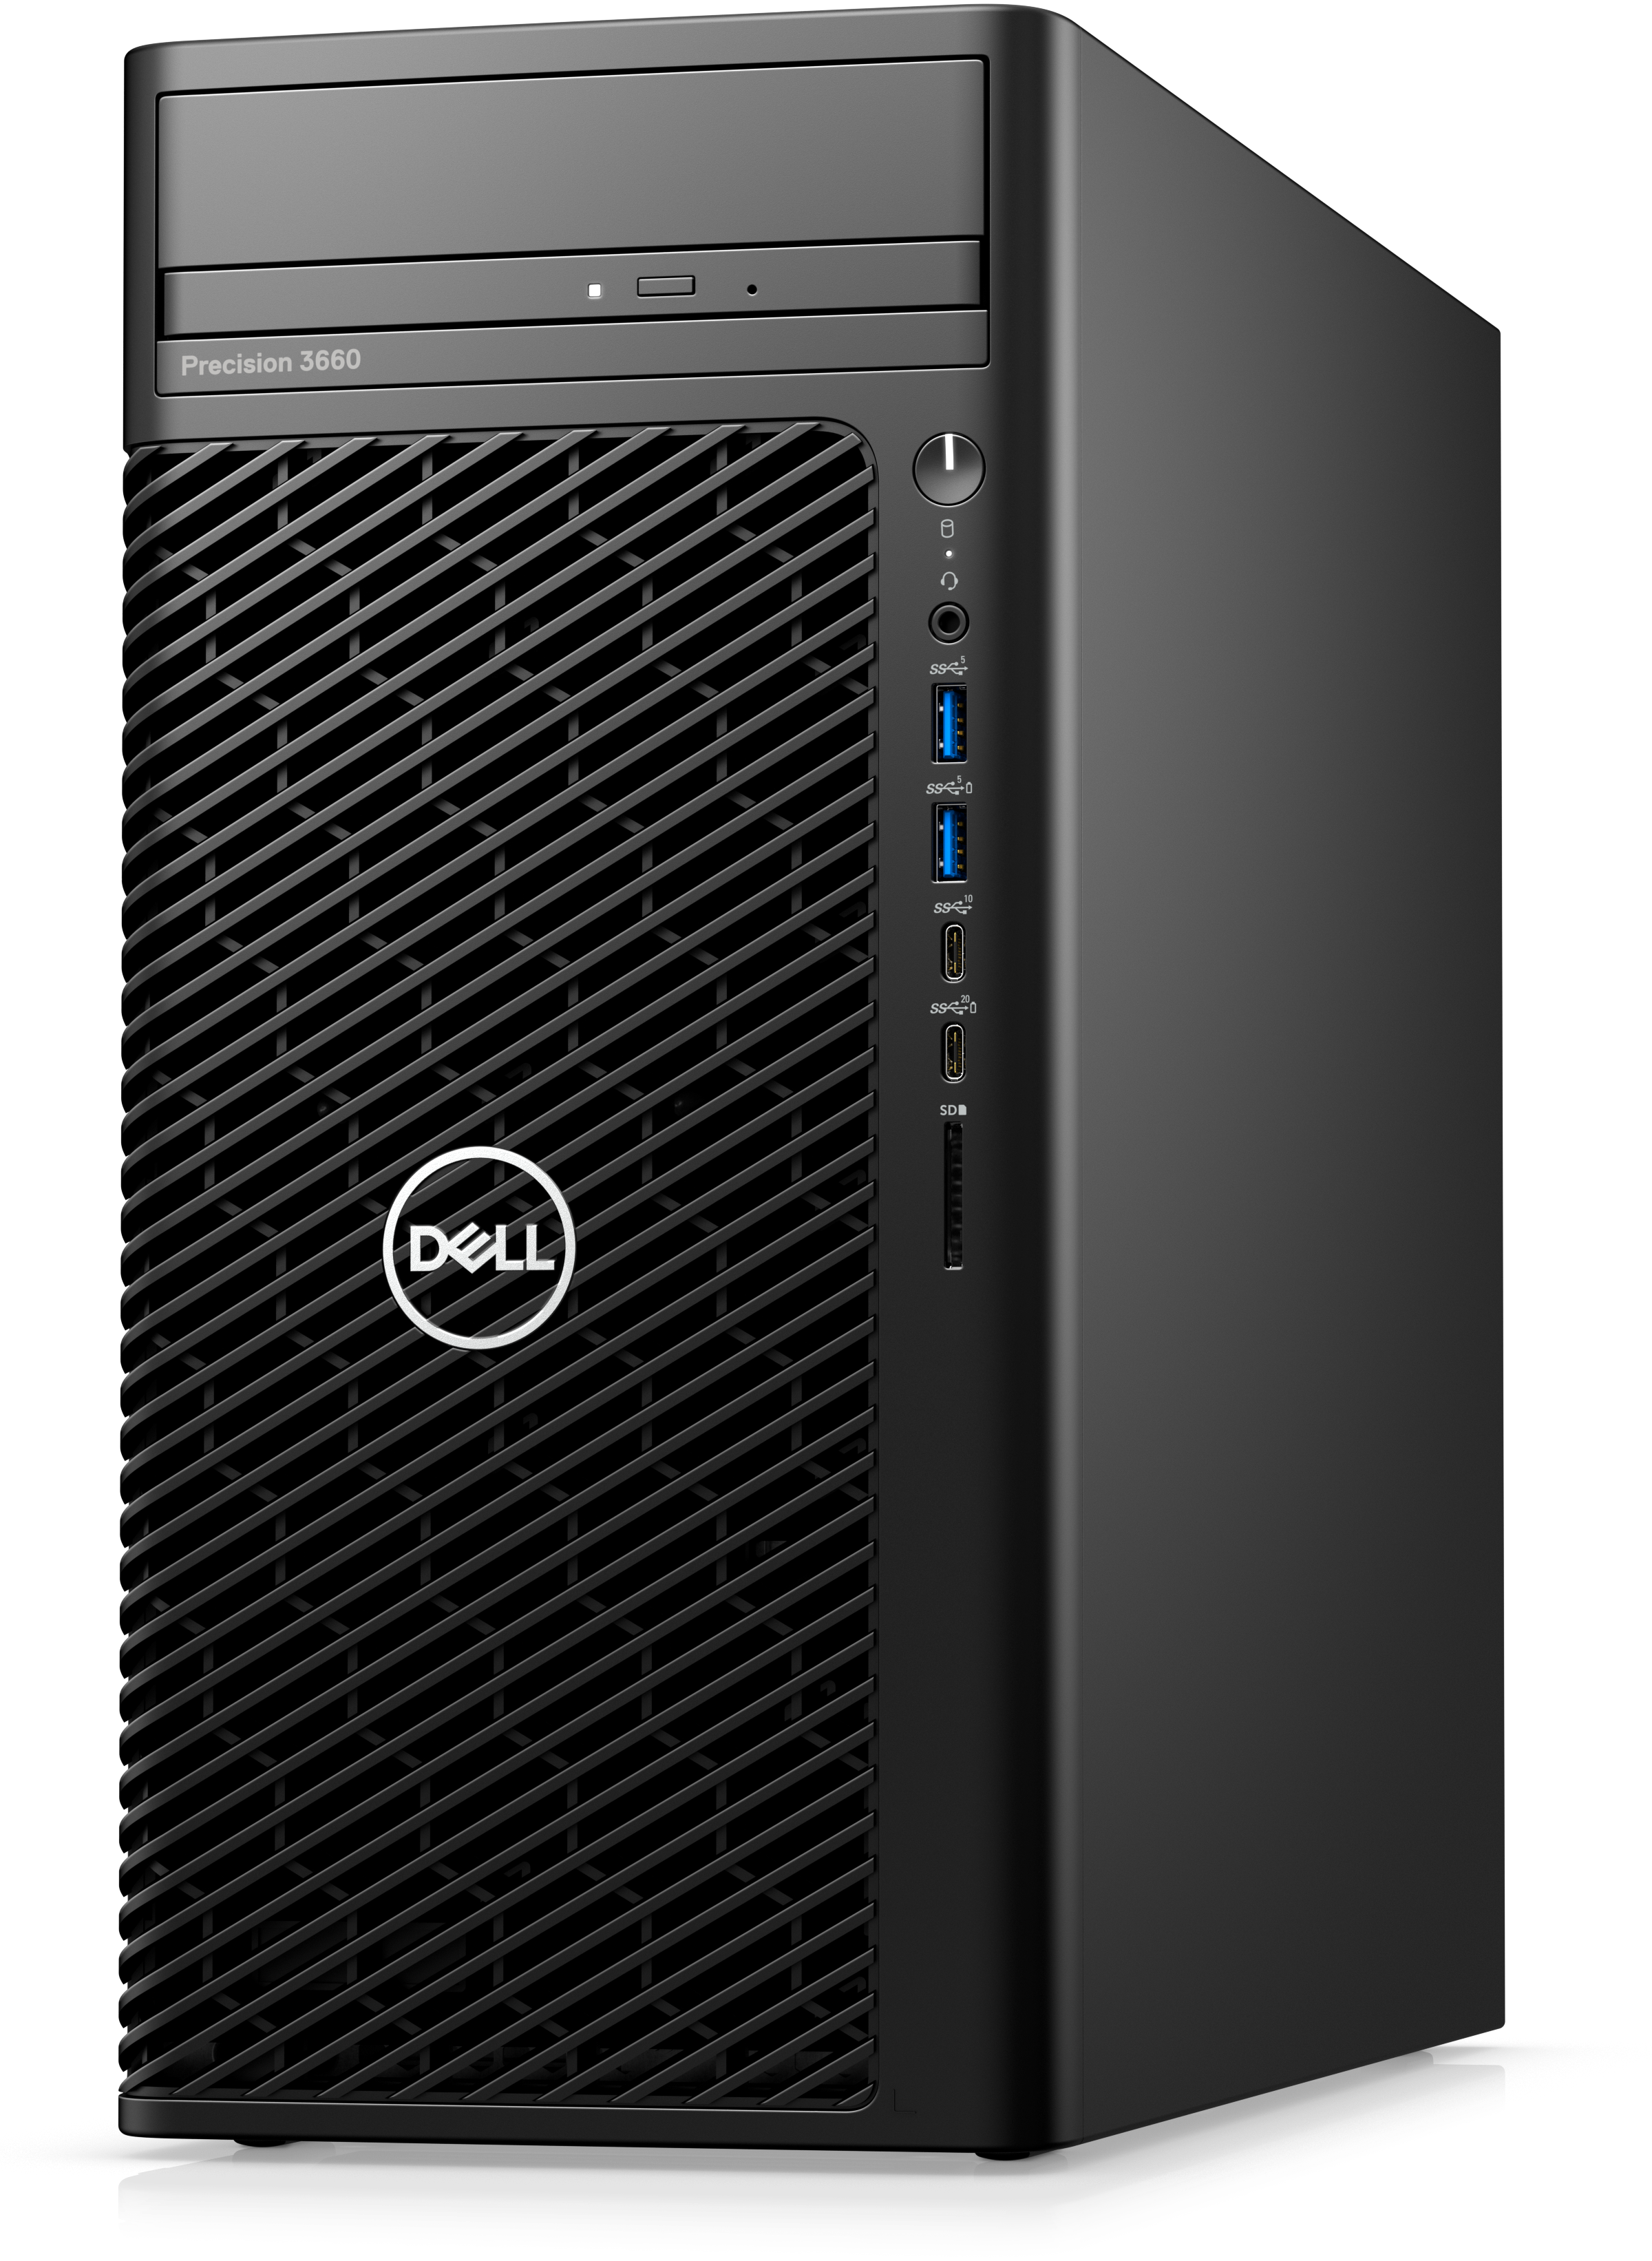 Dell Precision 3660 Tower Workstation, 12th Generation Intel Core i9-12900 (16 core 30MB cache), 16GB, 512 SSD, No Monitor, DVDRW, 3 Yrs PS, 500W, Windows 10 Pro